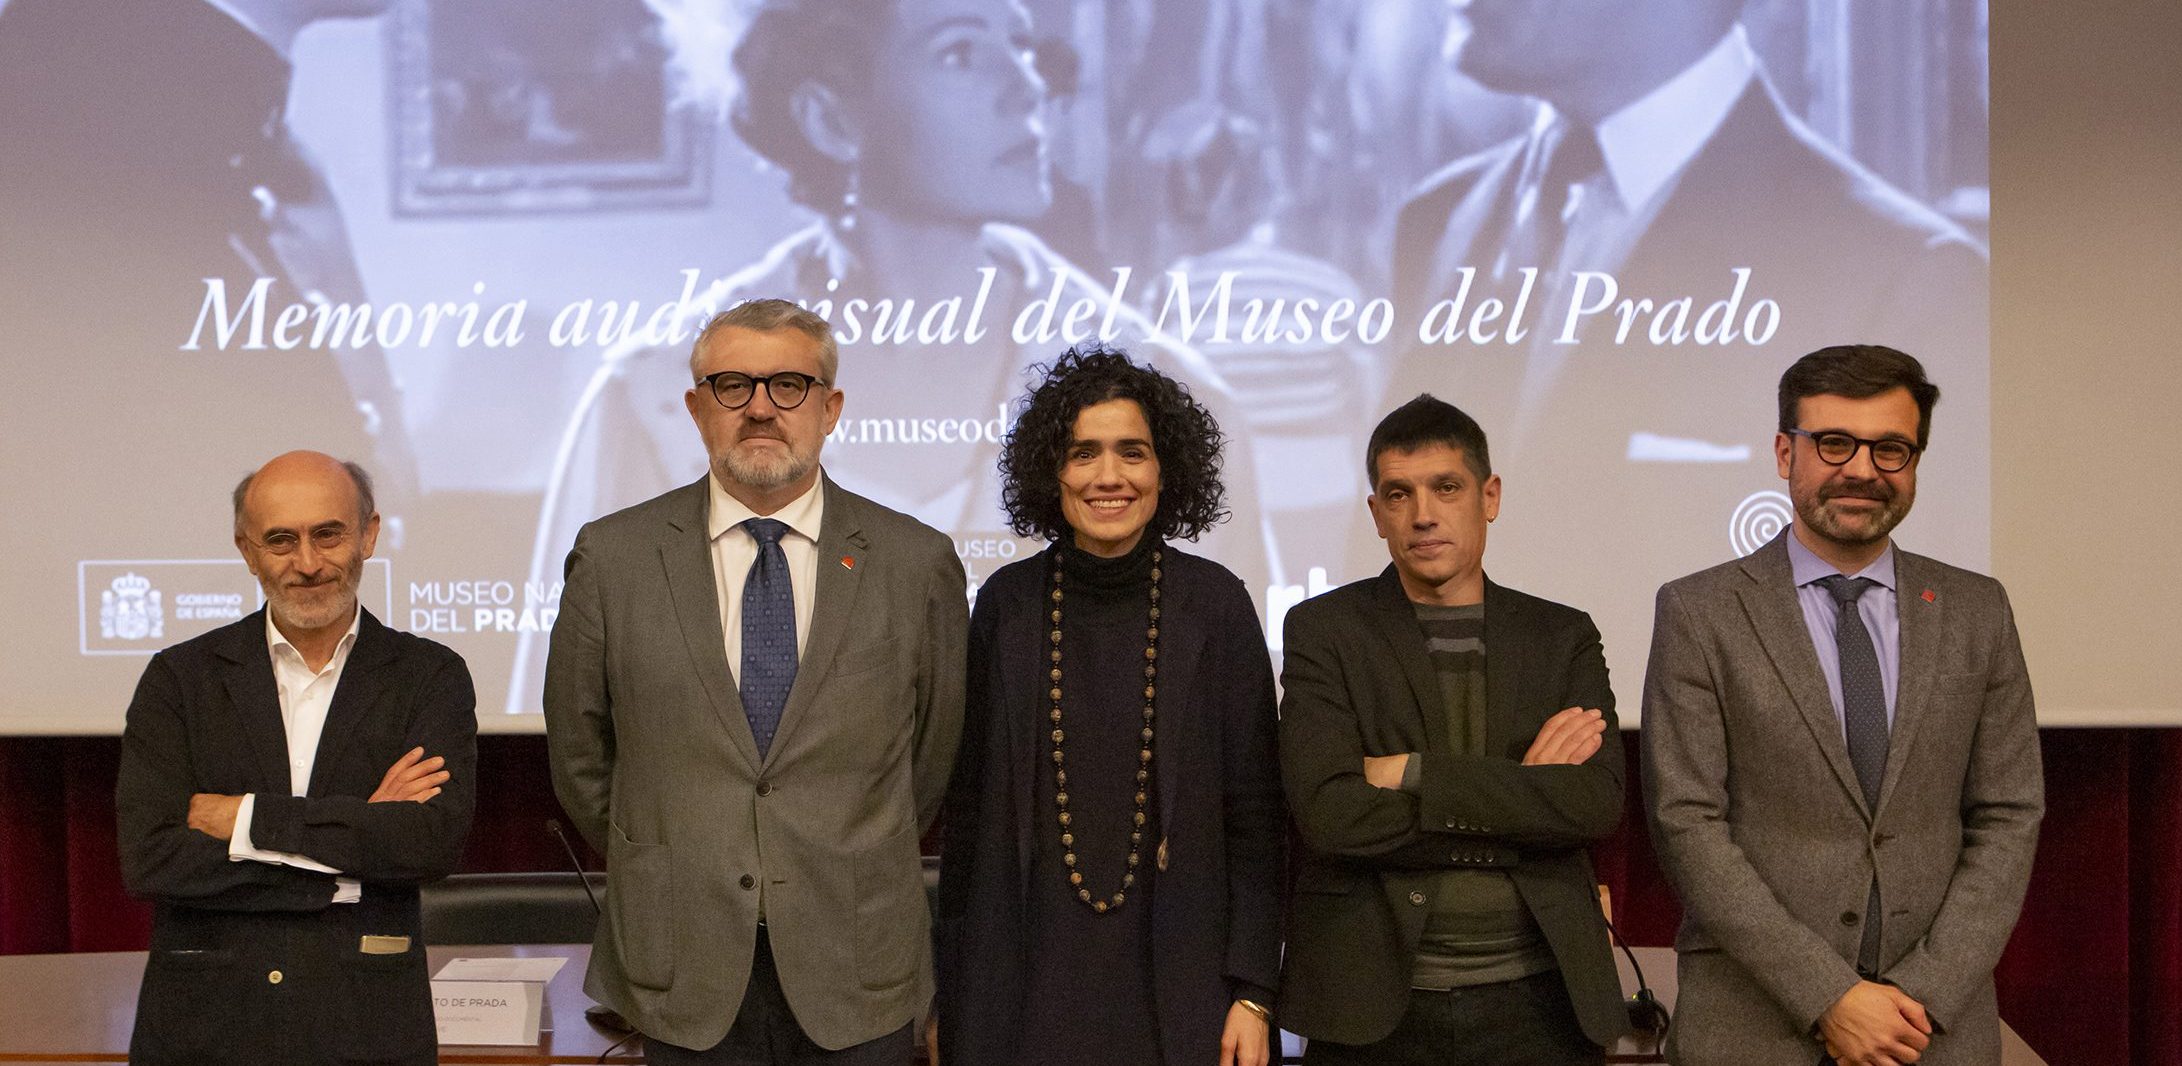 Una memoria audiovisual para el Prado en su bicentenario